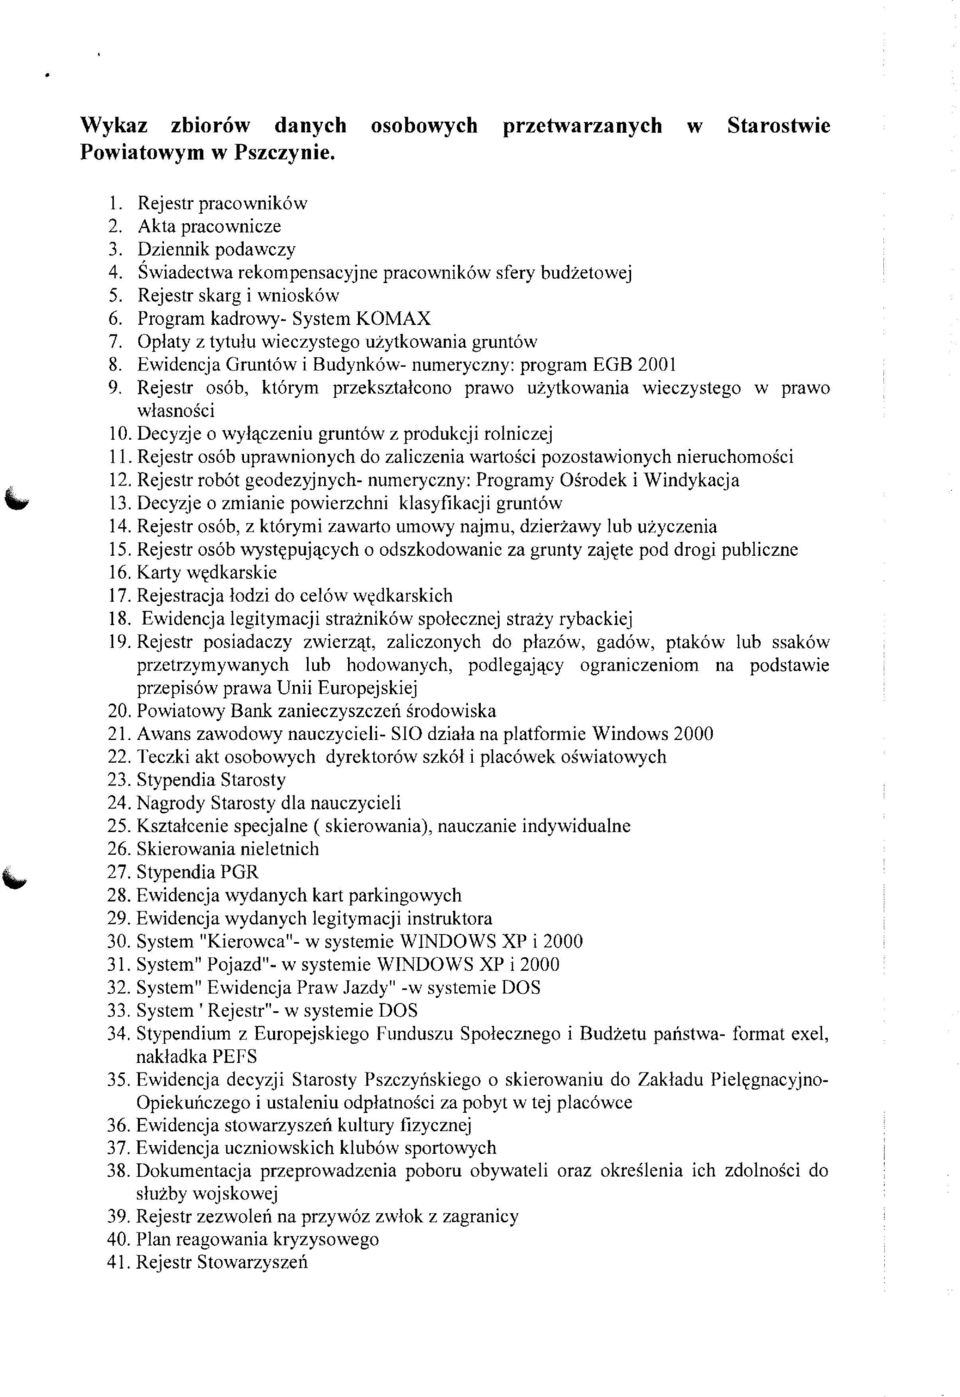 Ewidencja Gruntow i Budynkow- numeryczny: program EGB 2001 9. Rejestr osob, ktorym przeksztalcono prawo uzytkowania wieczystego w prawo wlasnosci 10.